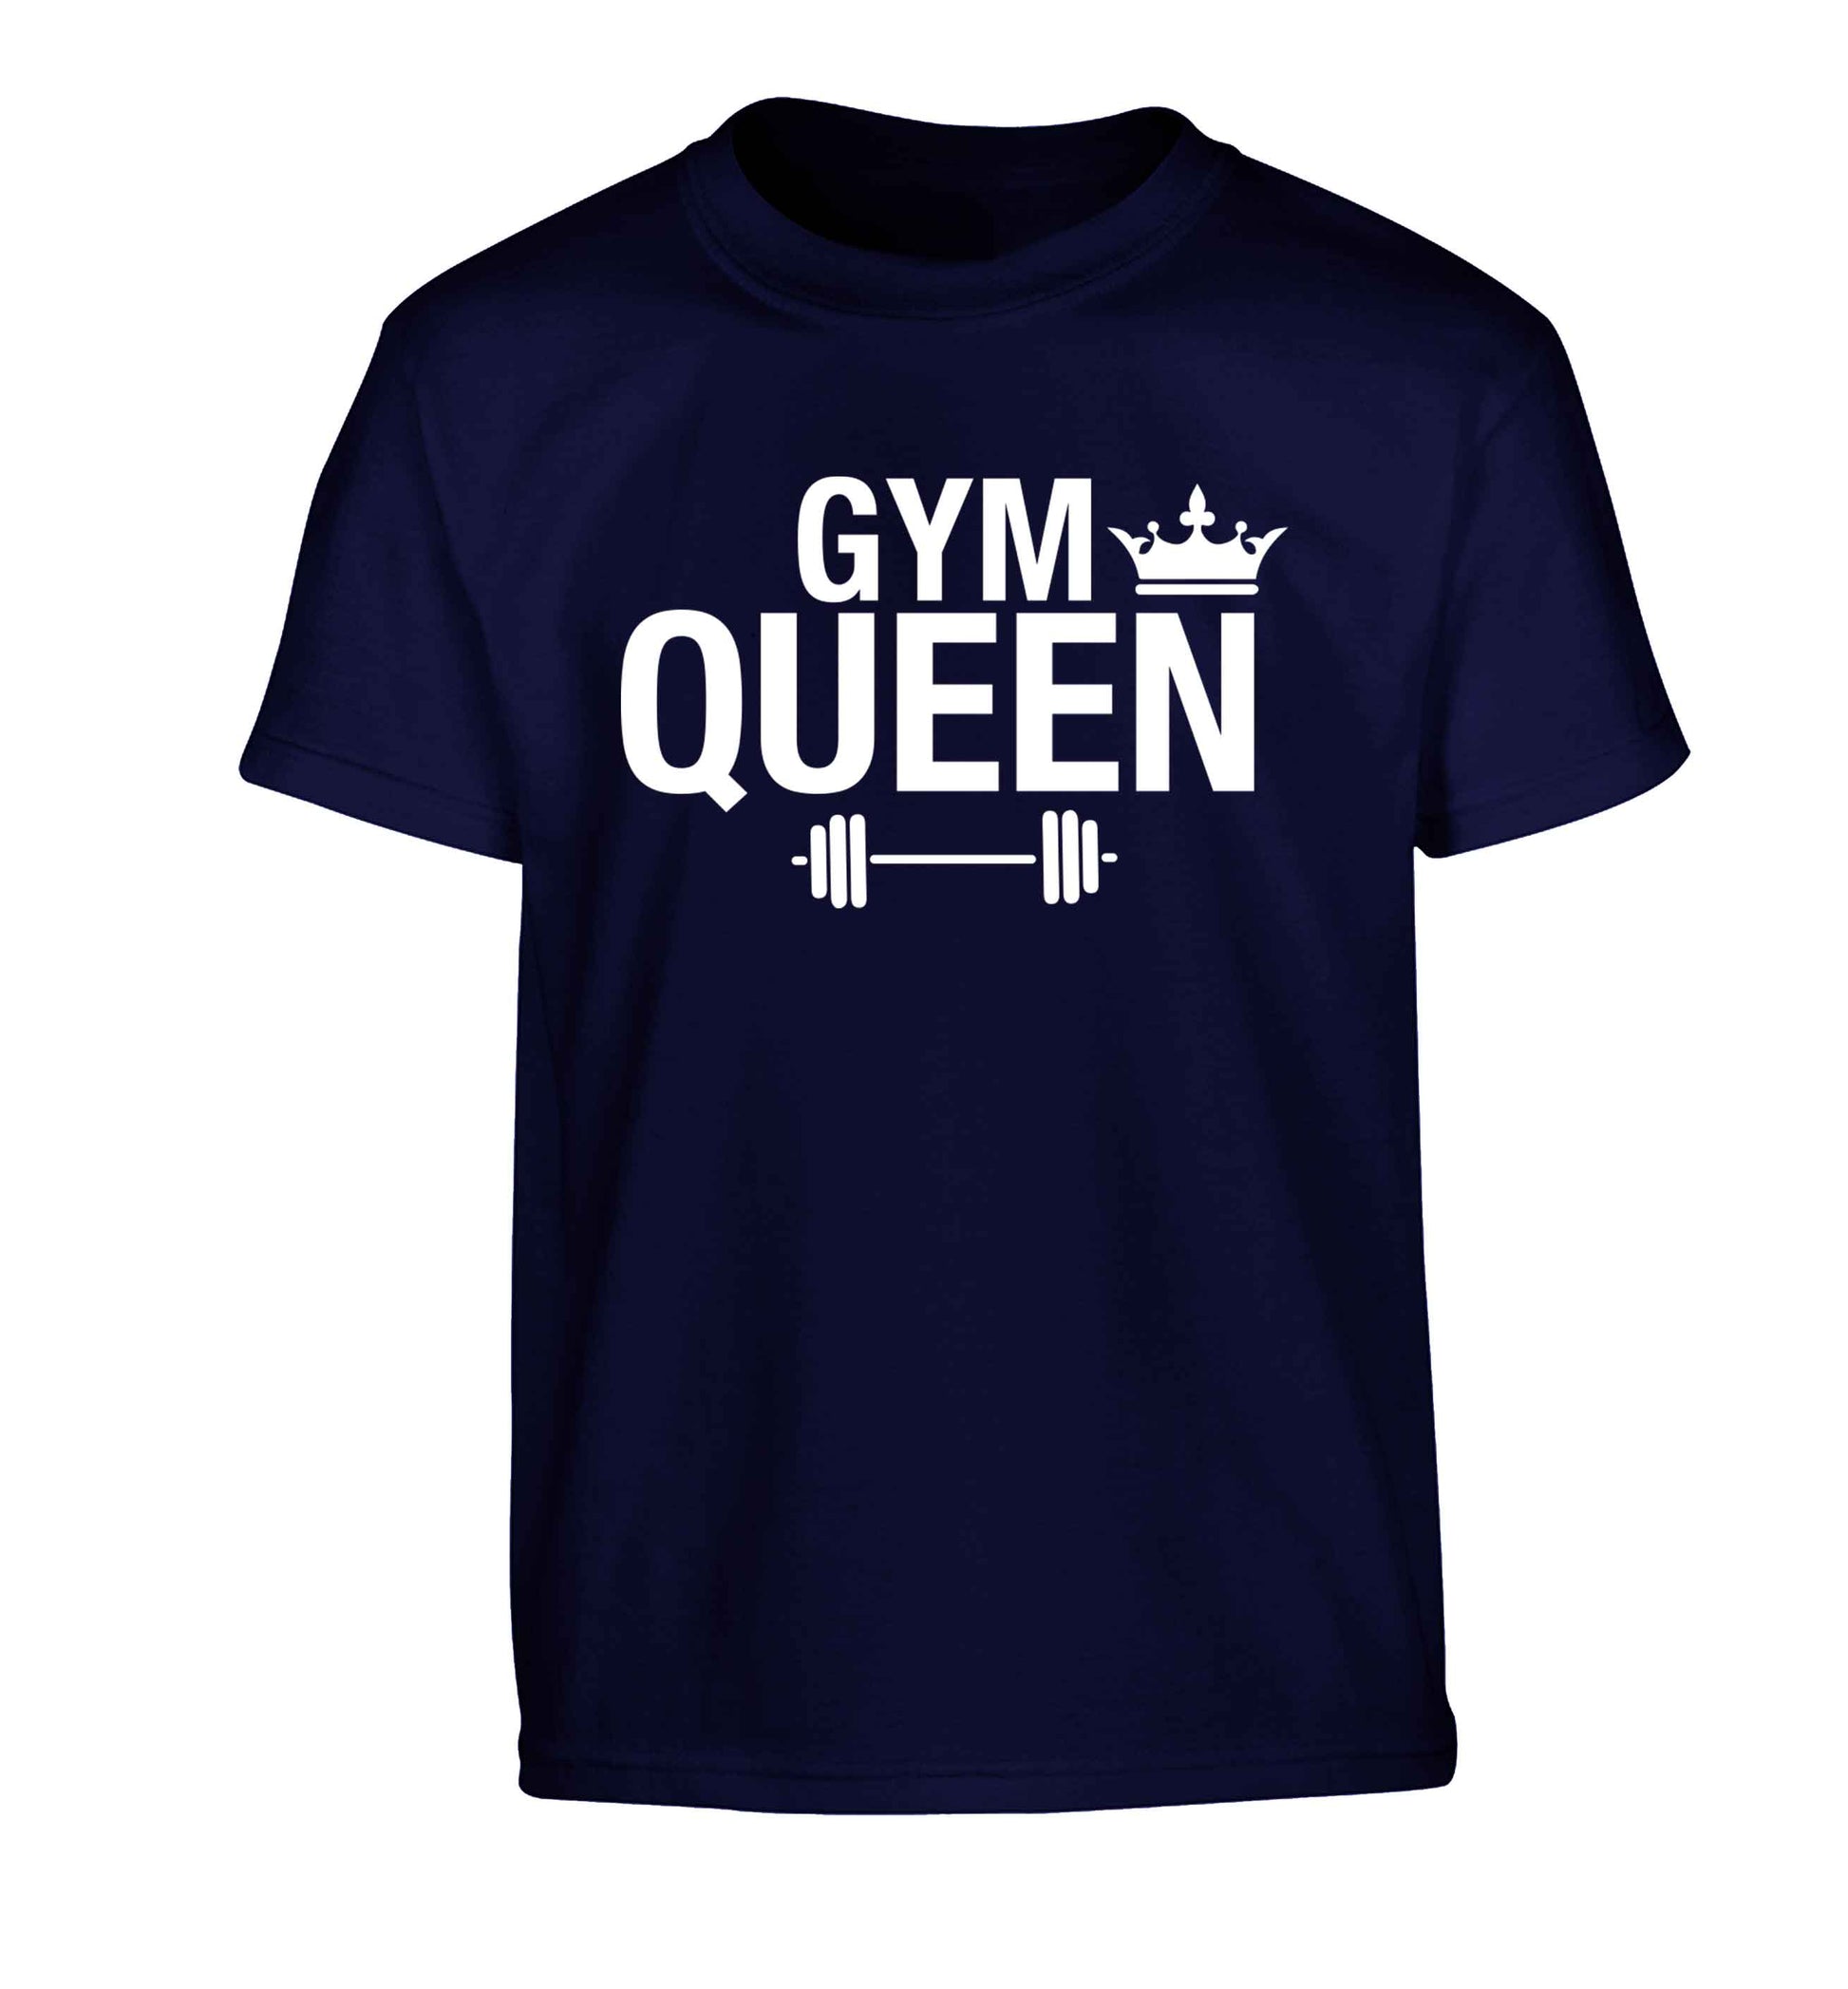 Gym queen Children's navy Tshirt 12-13 Years